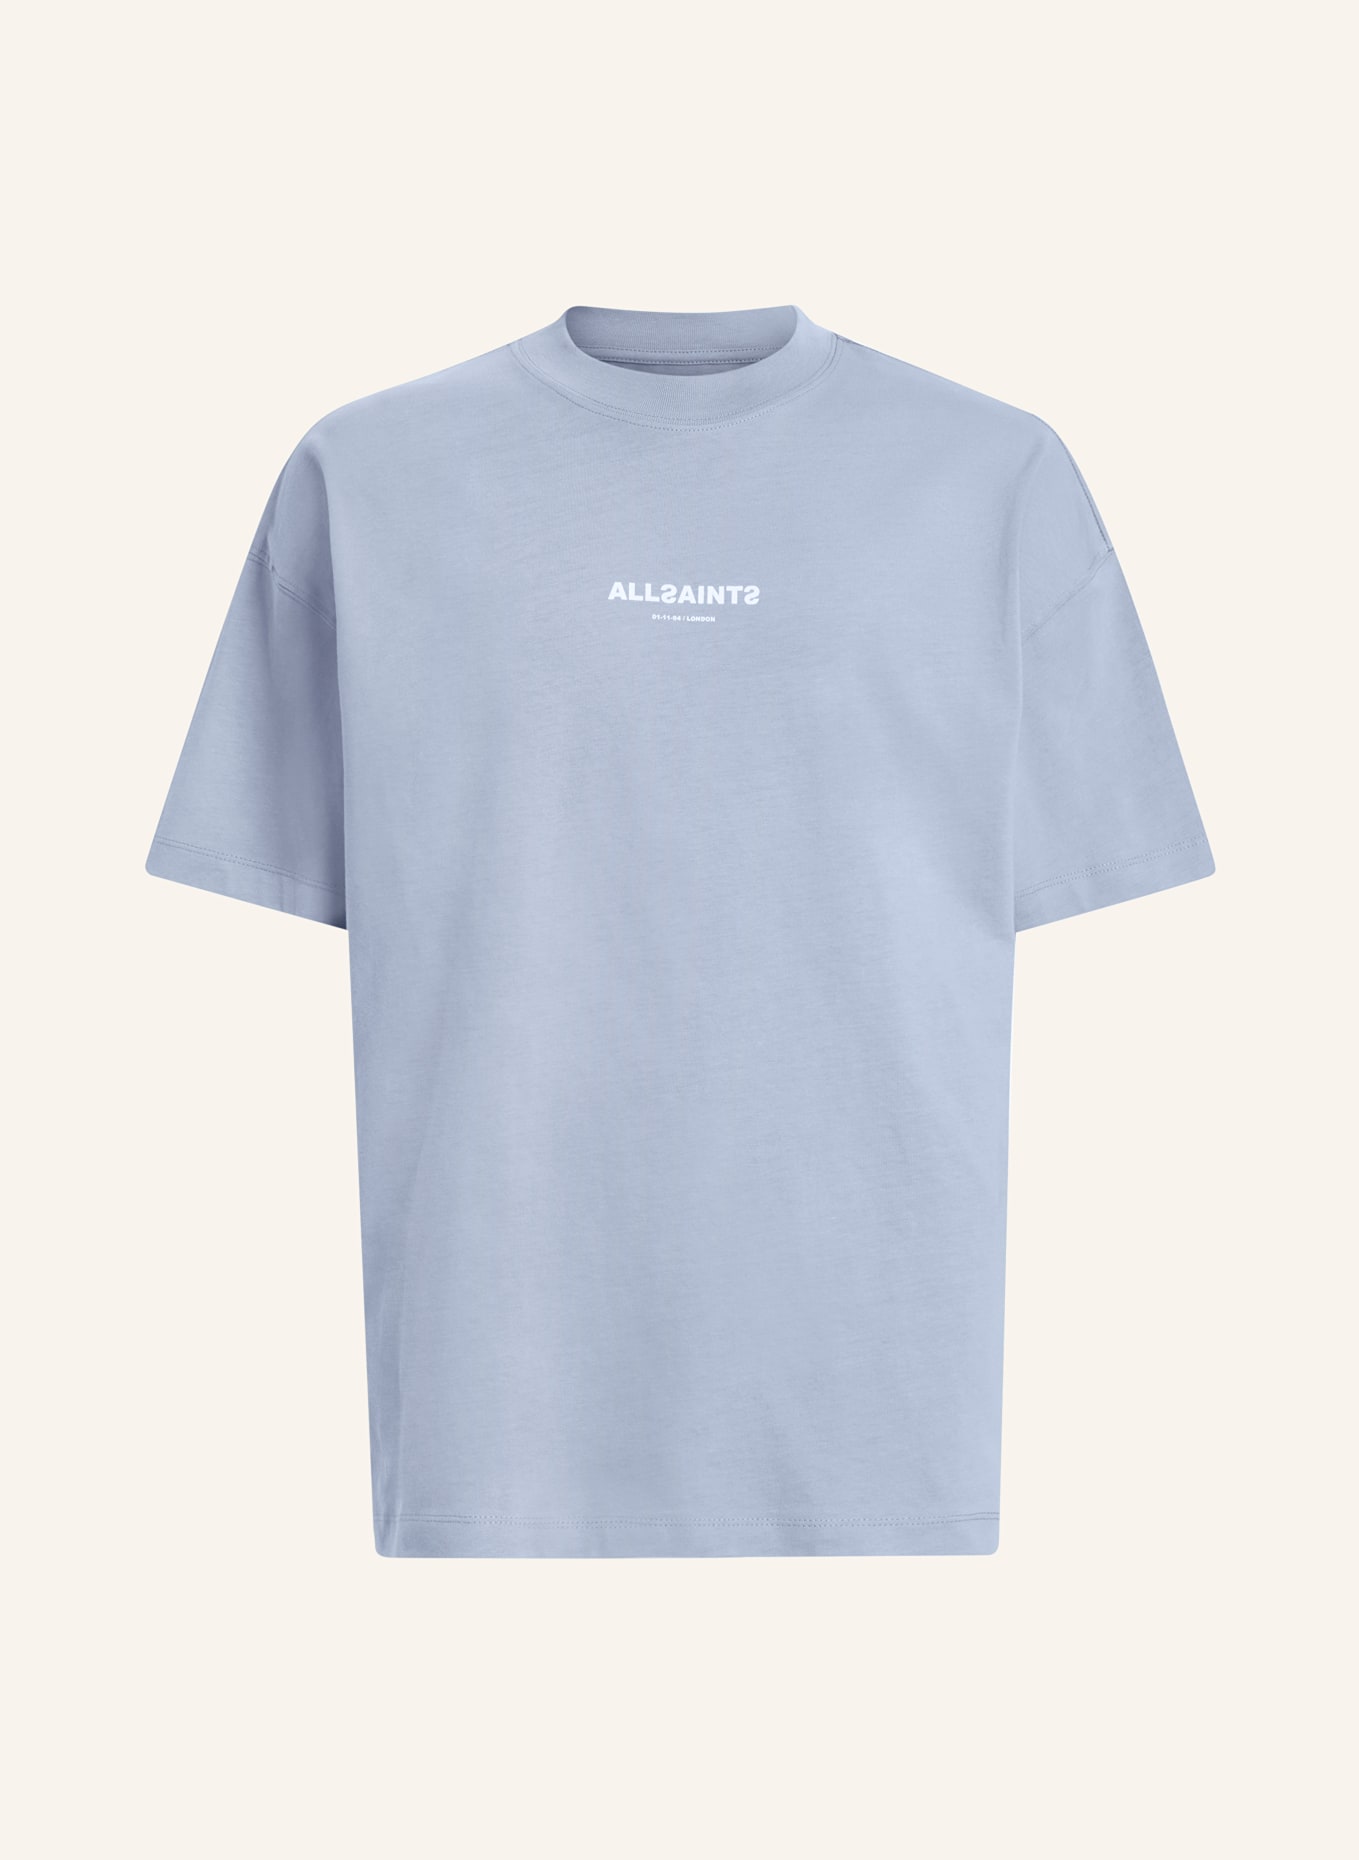 ALLSAINTS Oversized shirt SUBVERSE, Color: LIGHT BLUE (Image 1)